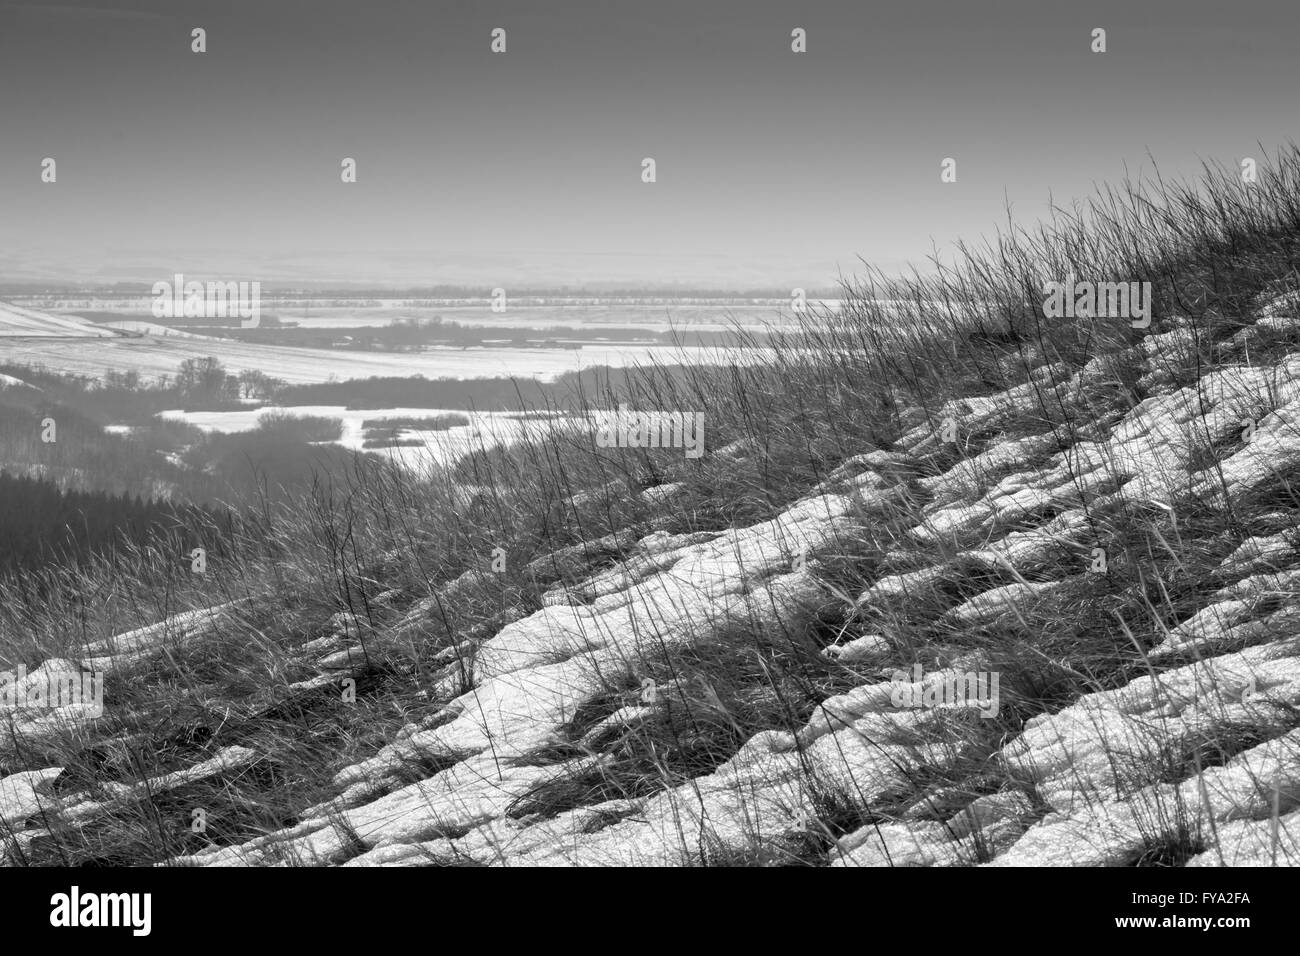 Colline couverte de neige en hiver avec des brins d'herbe et de la végétation au-dessus de la toundra glacée. L'image monochrome noir et blanc. Banque D'Images